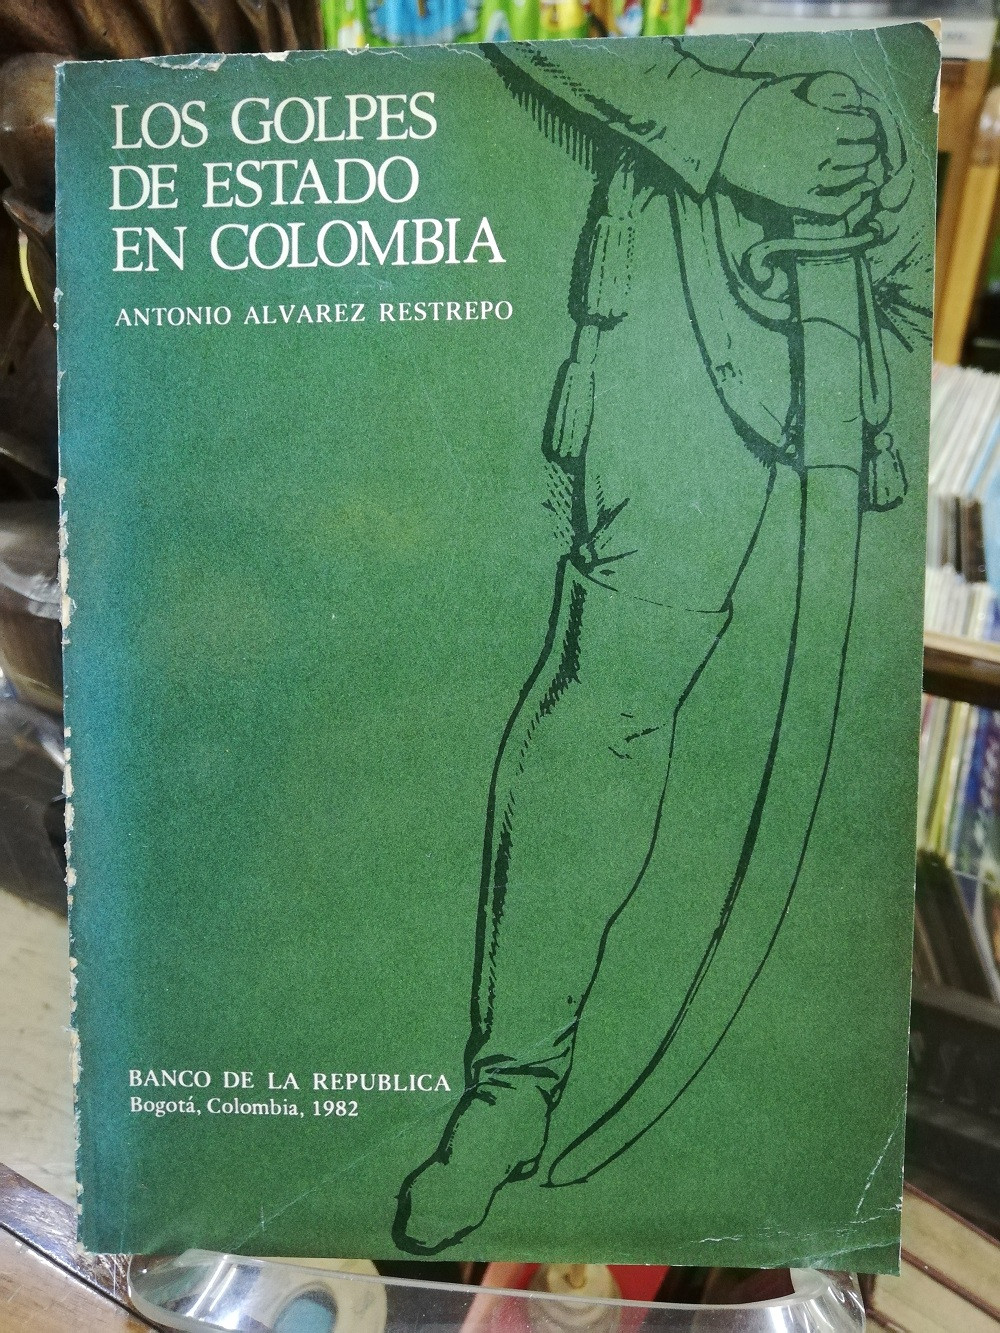 Imagen LOS GOLPES DE ESTADO EN COLOMBIA - ANTONIO ALVAREZ RESTREPO 1